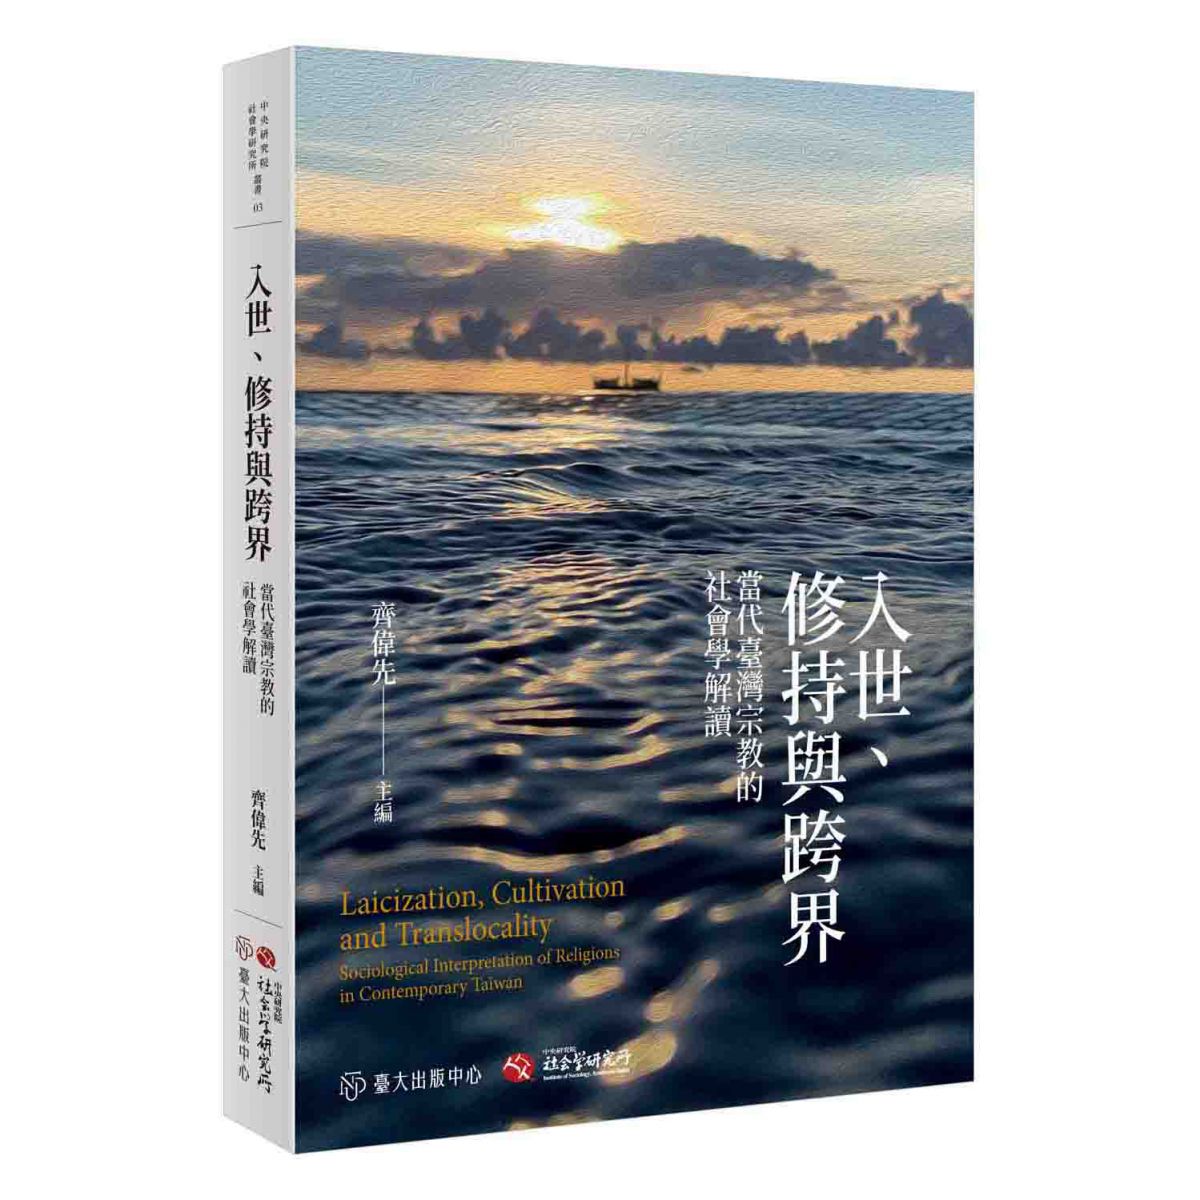 《入世、修持與跨界》從社會學的視角，解析臺灣特殊的宗教景觀